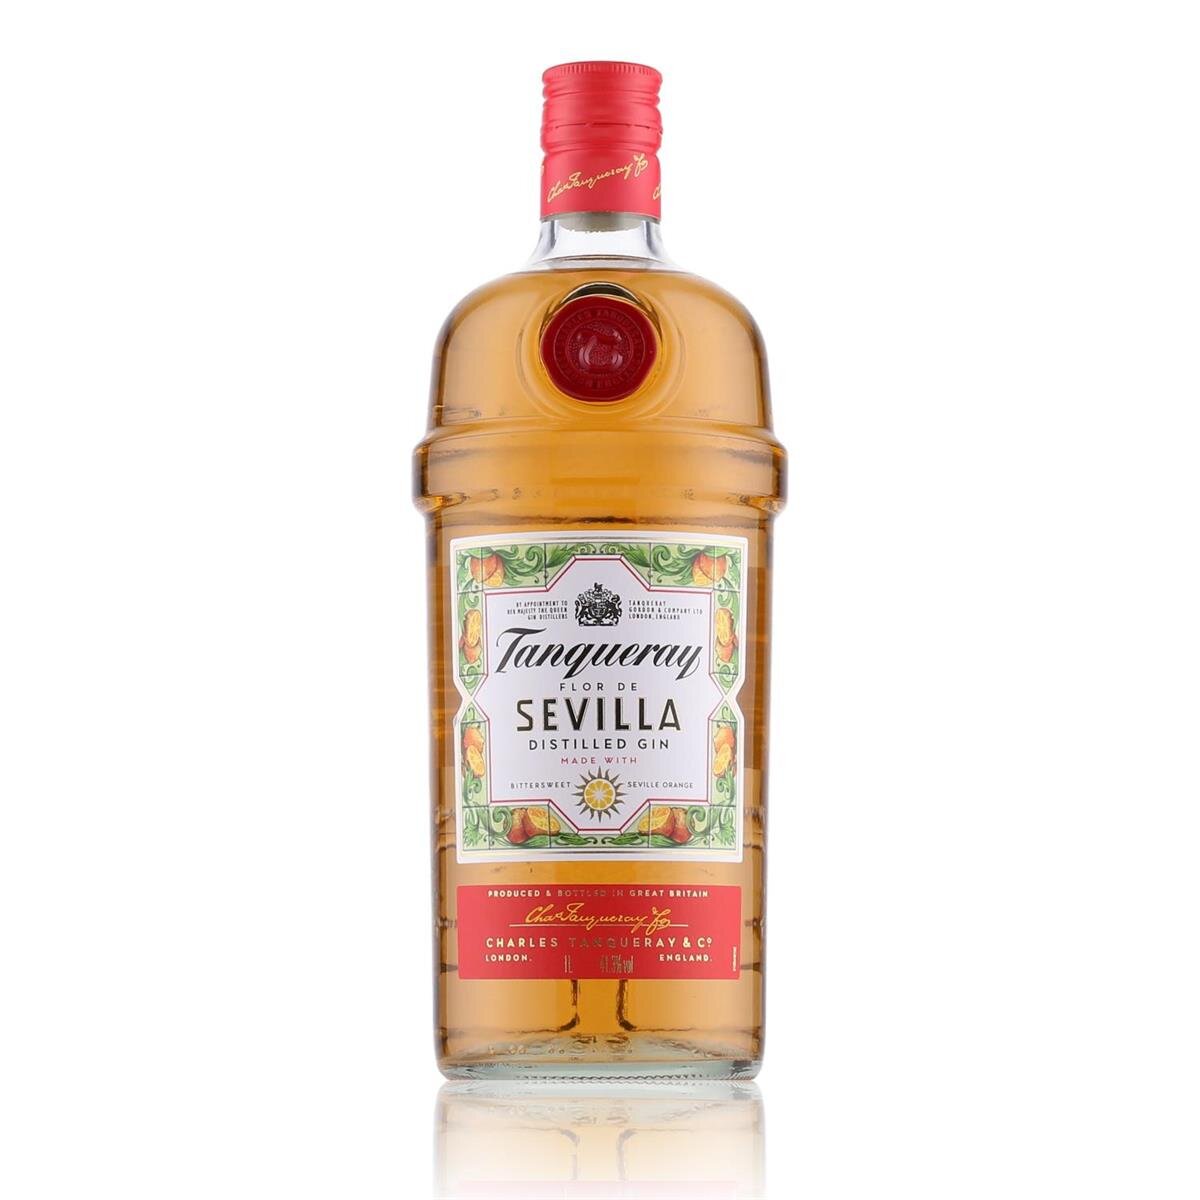 Gin Distilled Flor 24,19 1l, Tanqueray 41,3% Vol. € de Sevilla